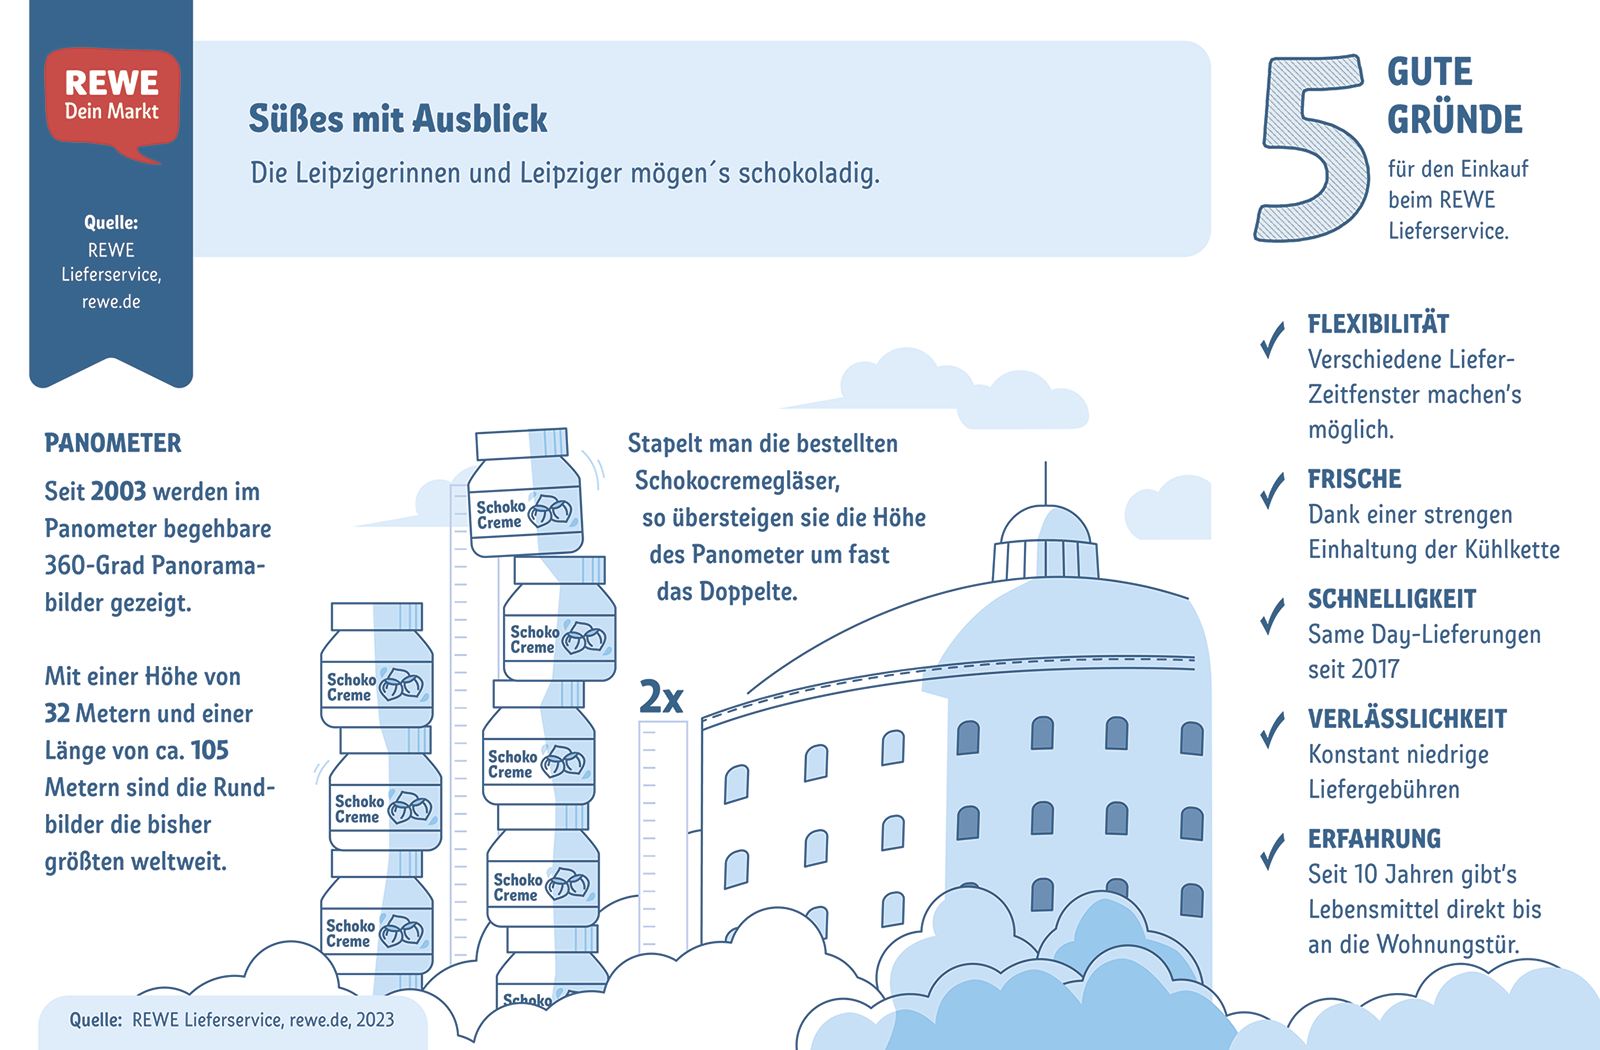 Infografik zu häufigen Bestellungen der Leipziger:innen  | © REWE